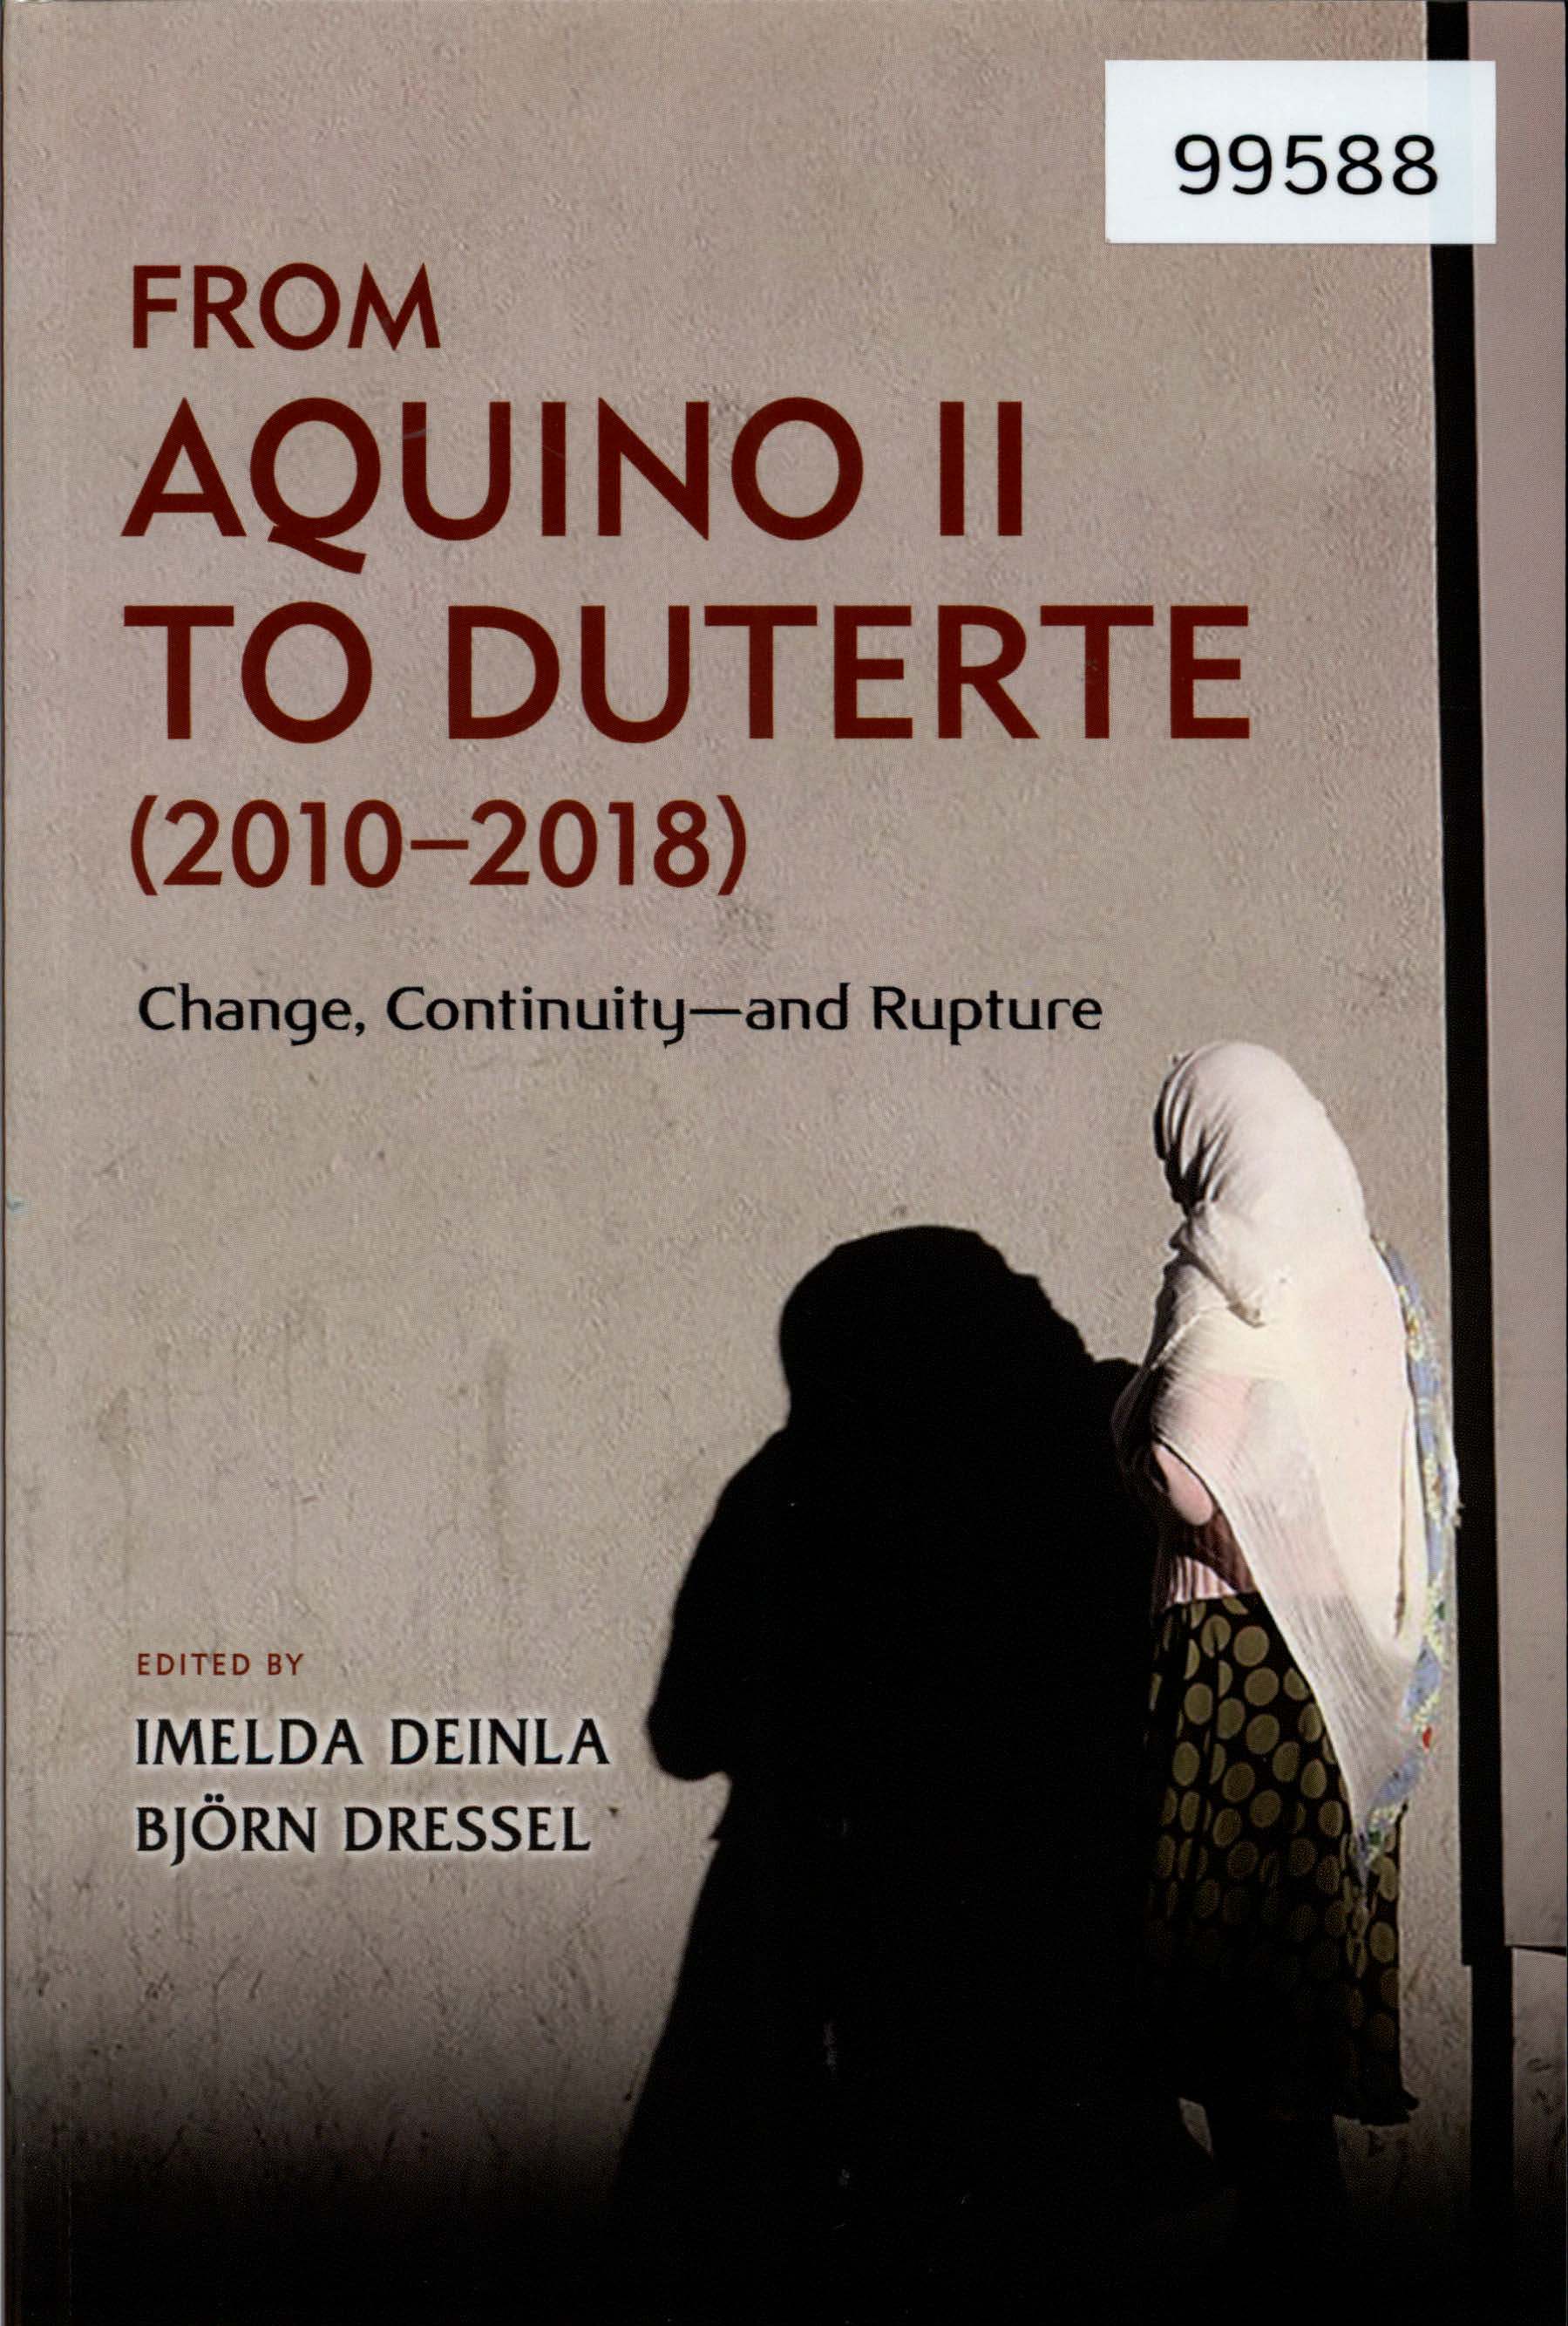 From Aquino II to Duterte (2010-2018)